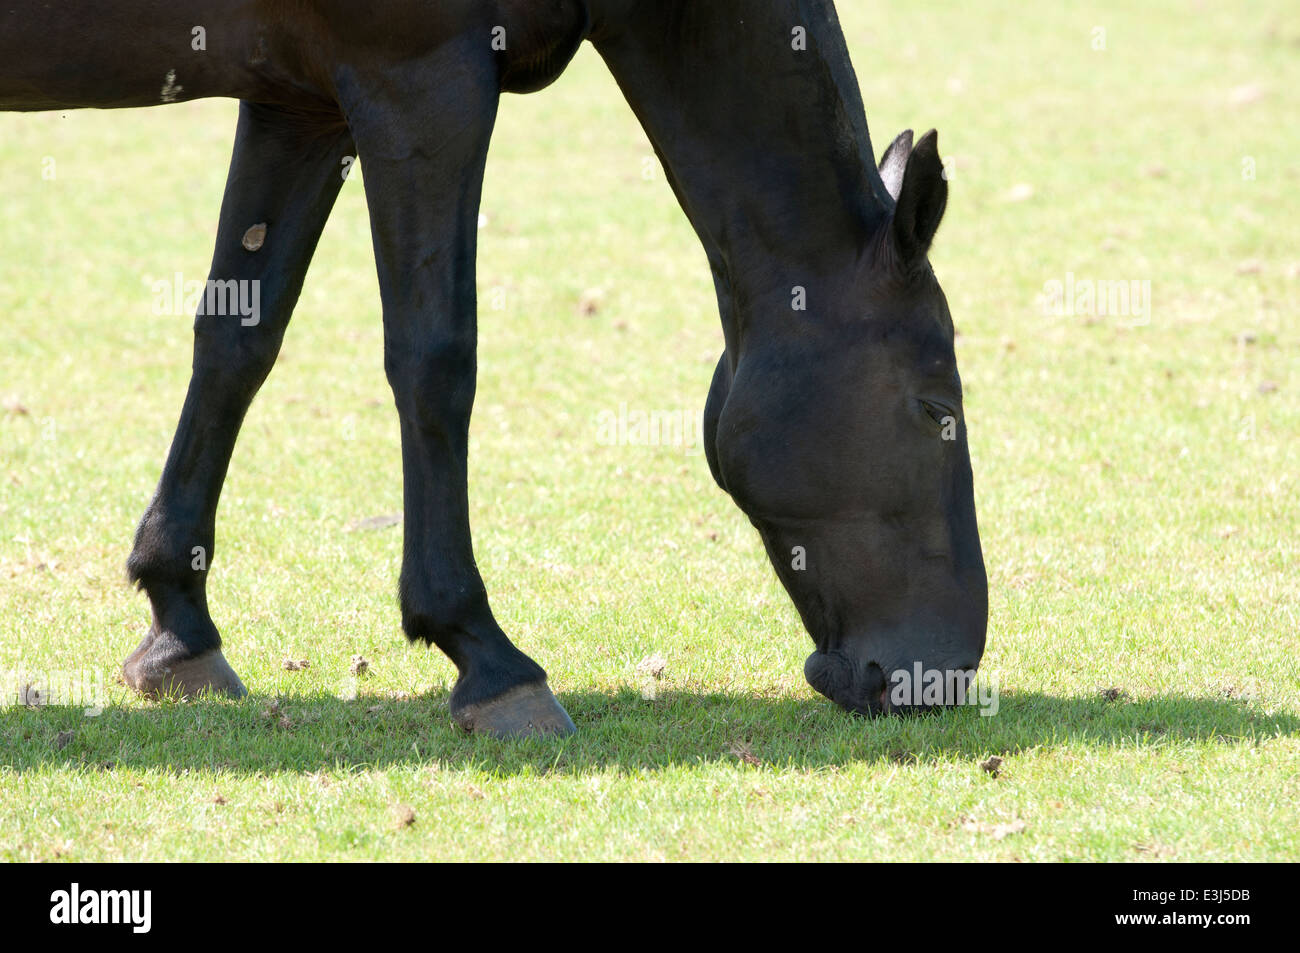 A polo pony grazing Stock Photo